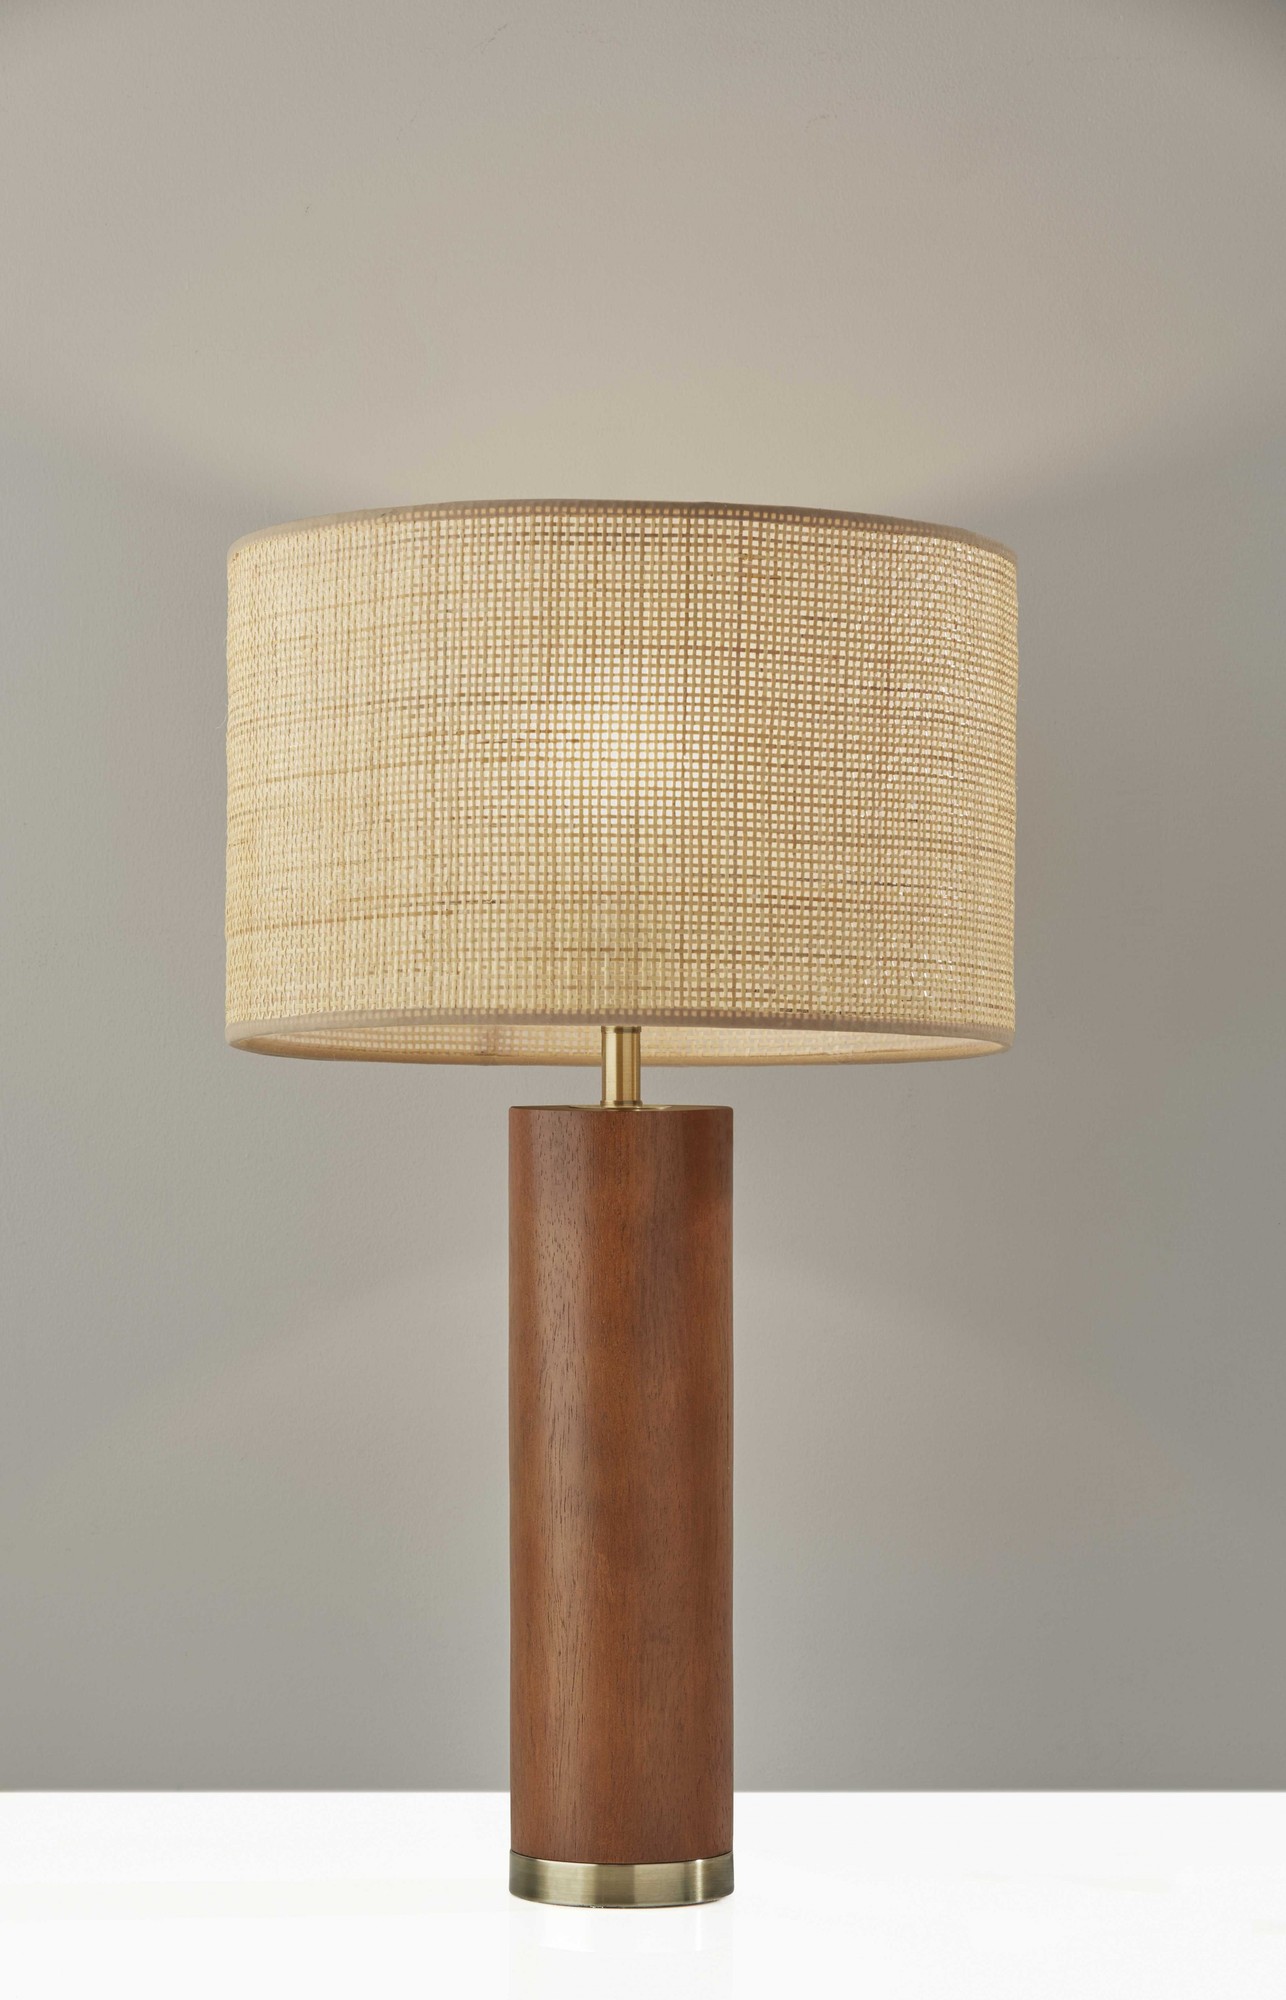 15" X 15" X 25.5" Walnut Wood Table Lamp